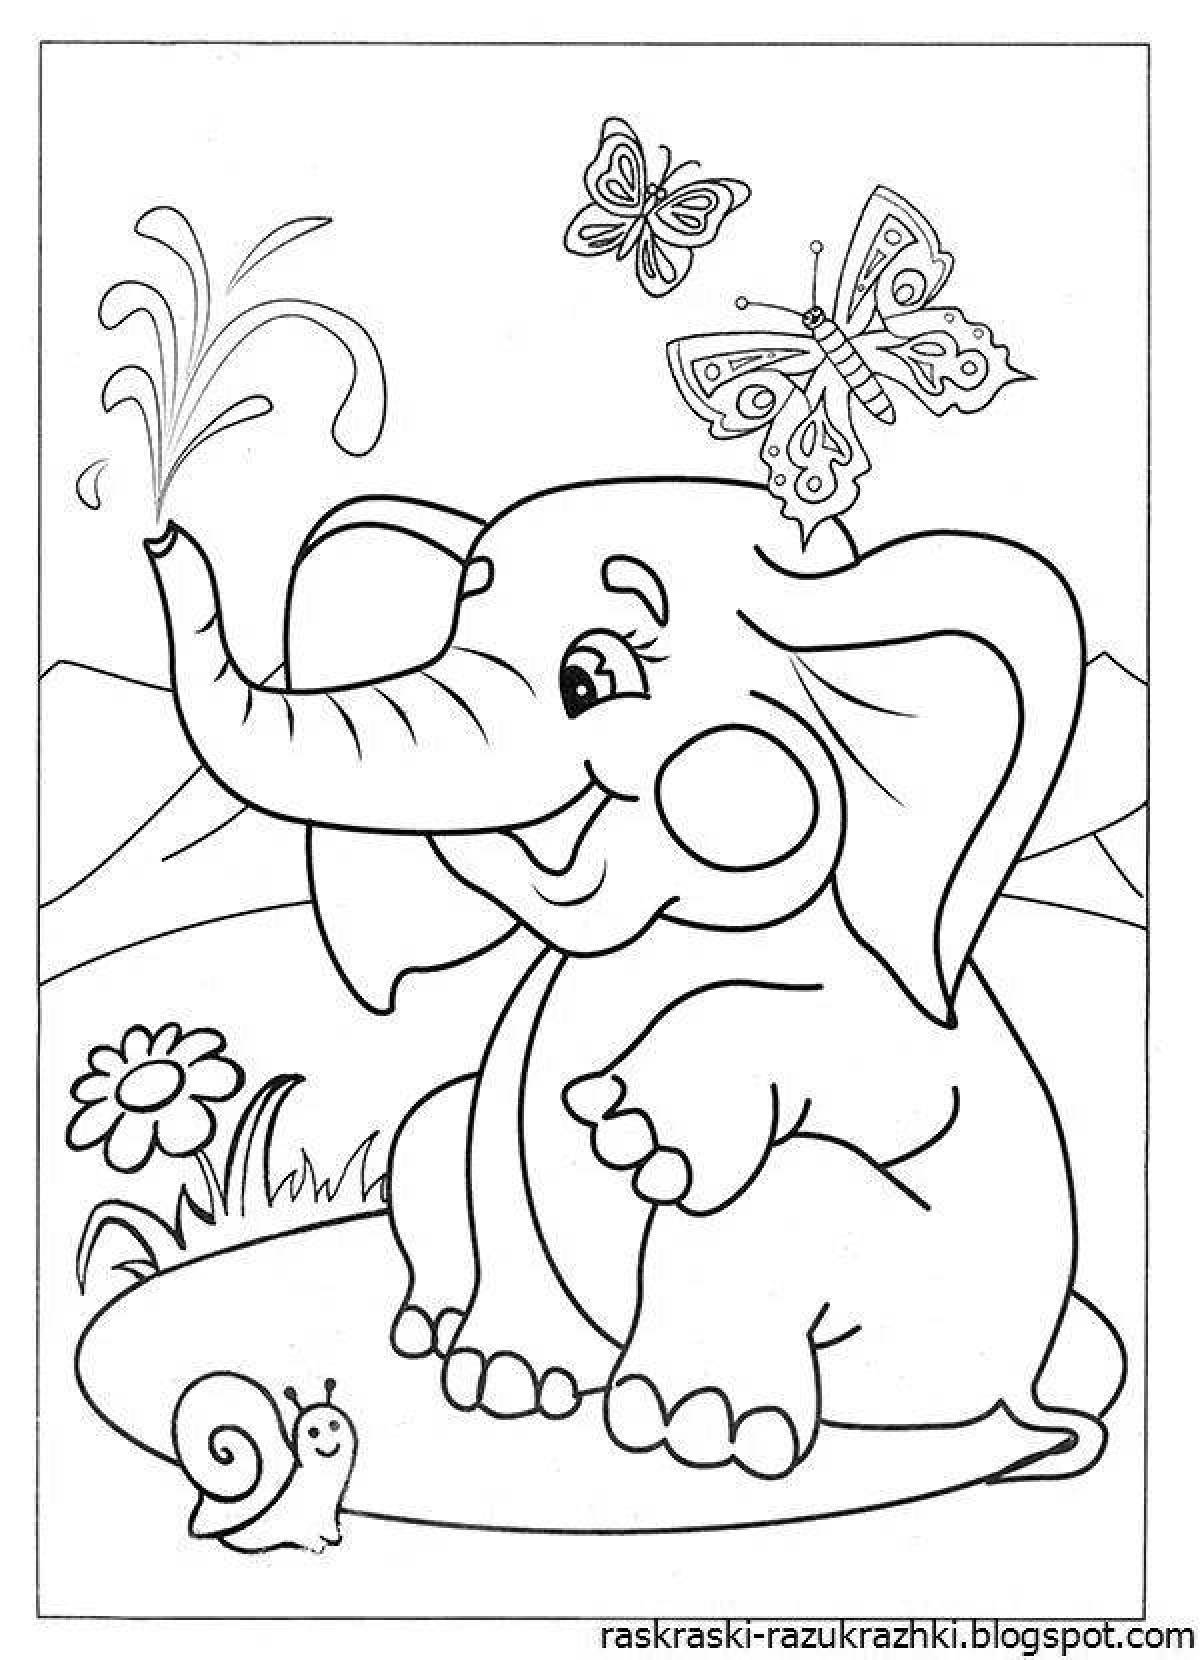 Яркая раскраска слона для детей 7 лет